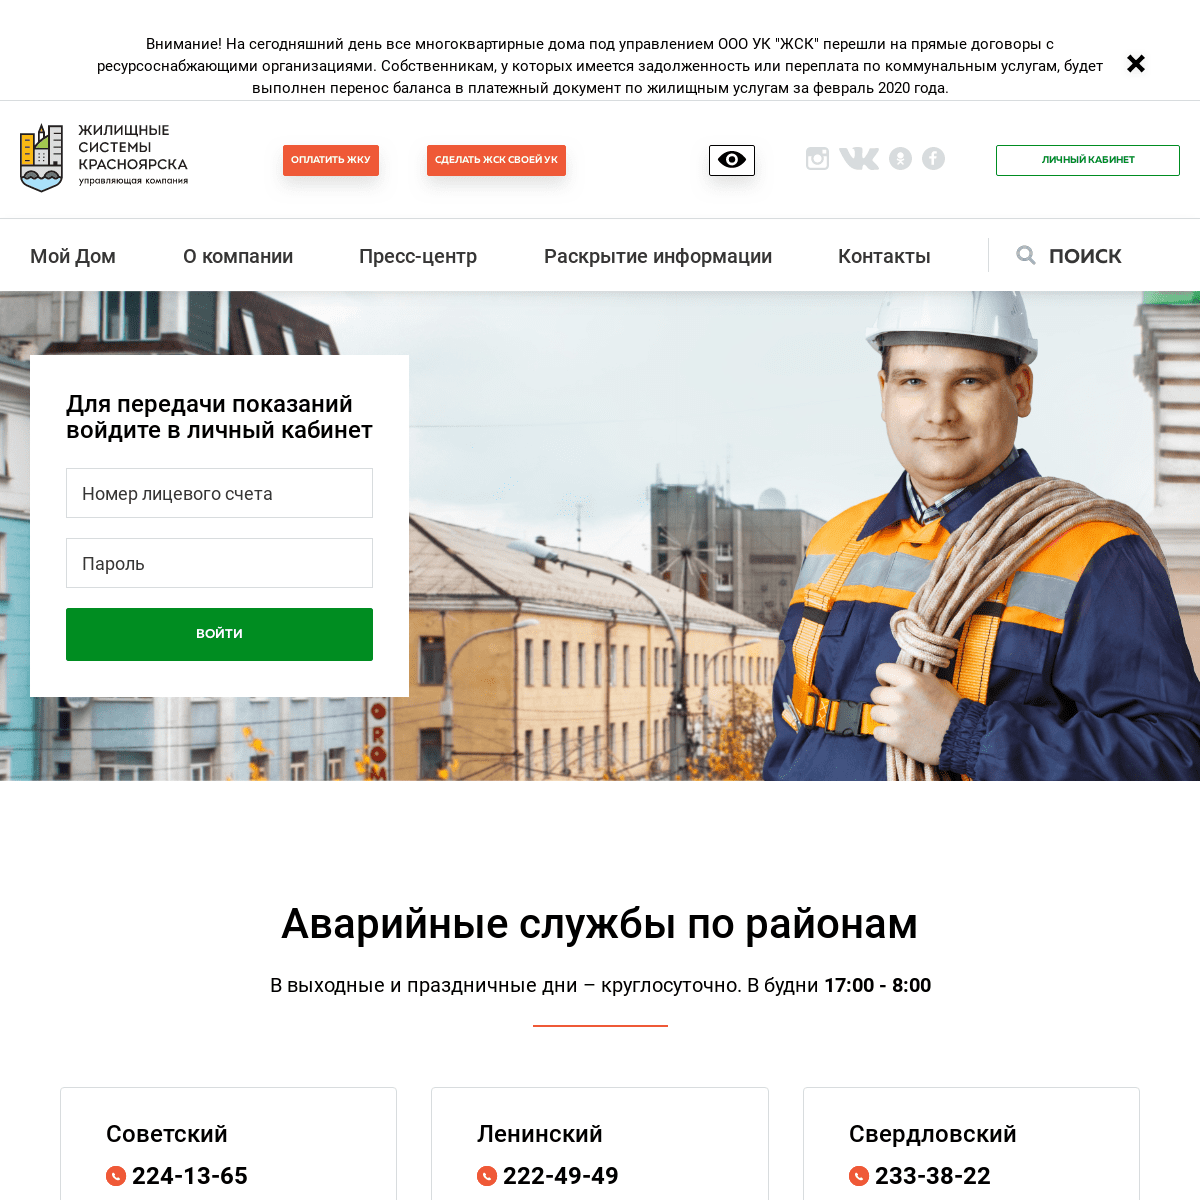 A complete backup of ukzhsk.ru